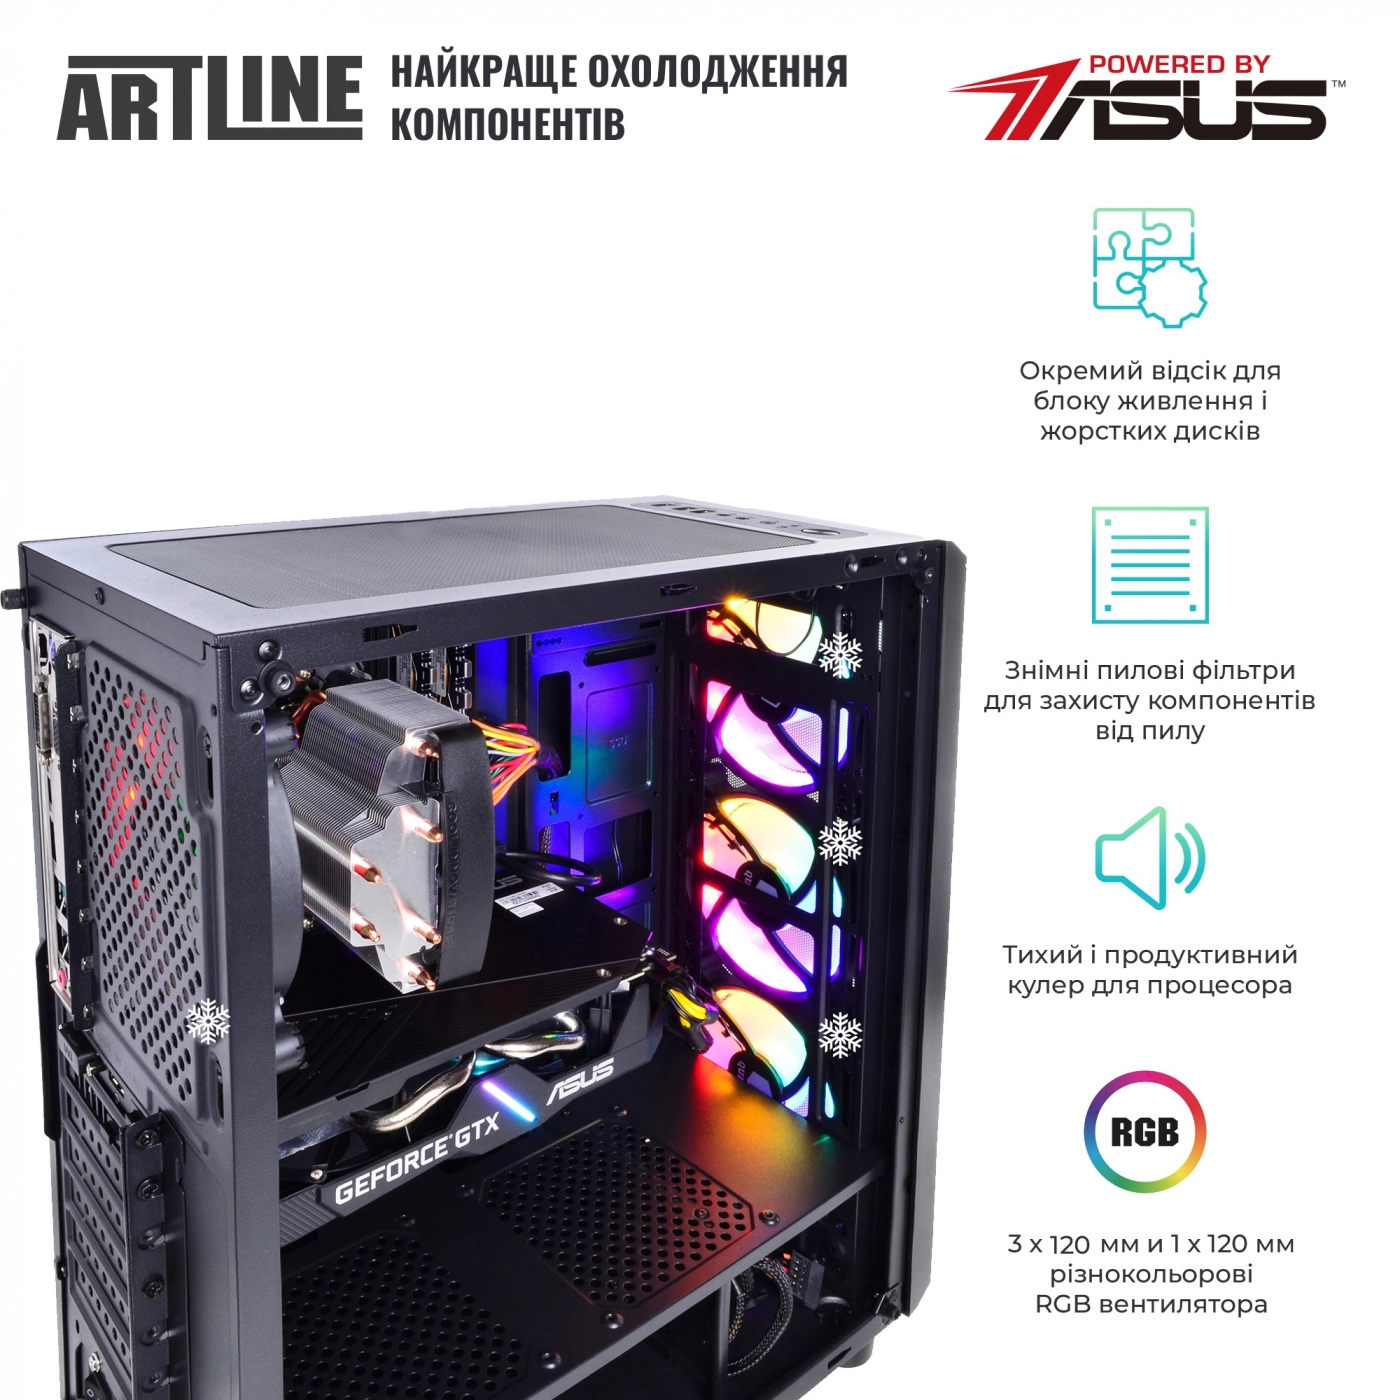 Купить Компьютер ARTLINE Gaming X74v15 - фото 3